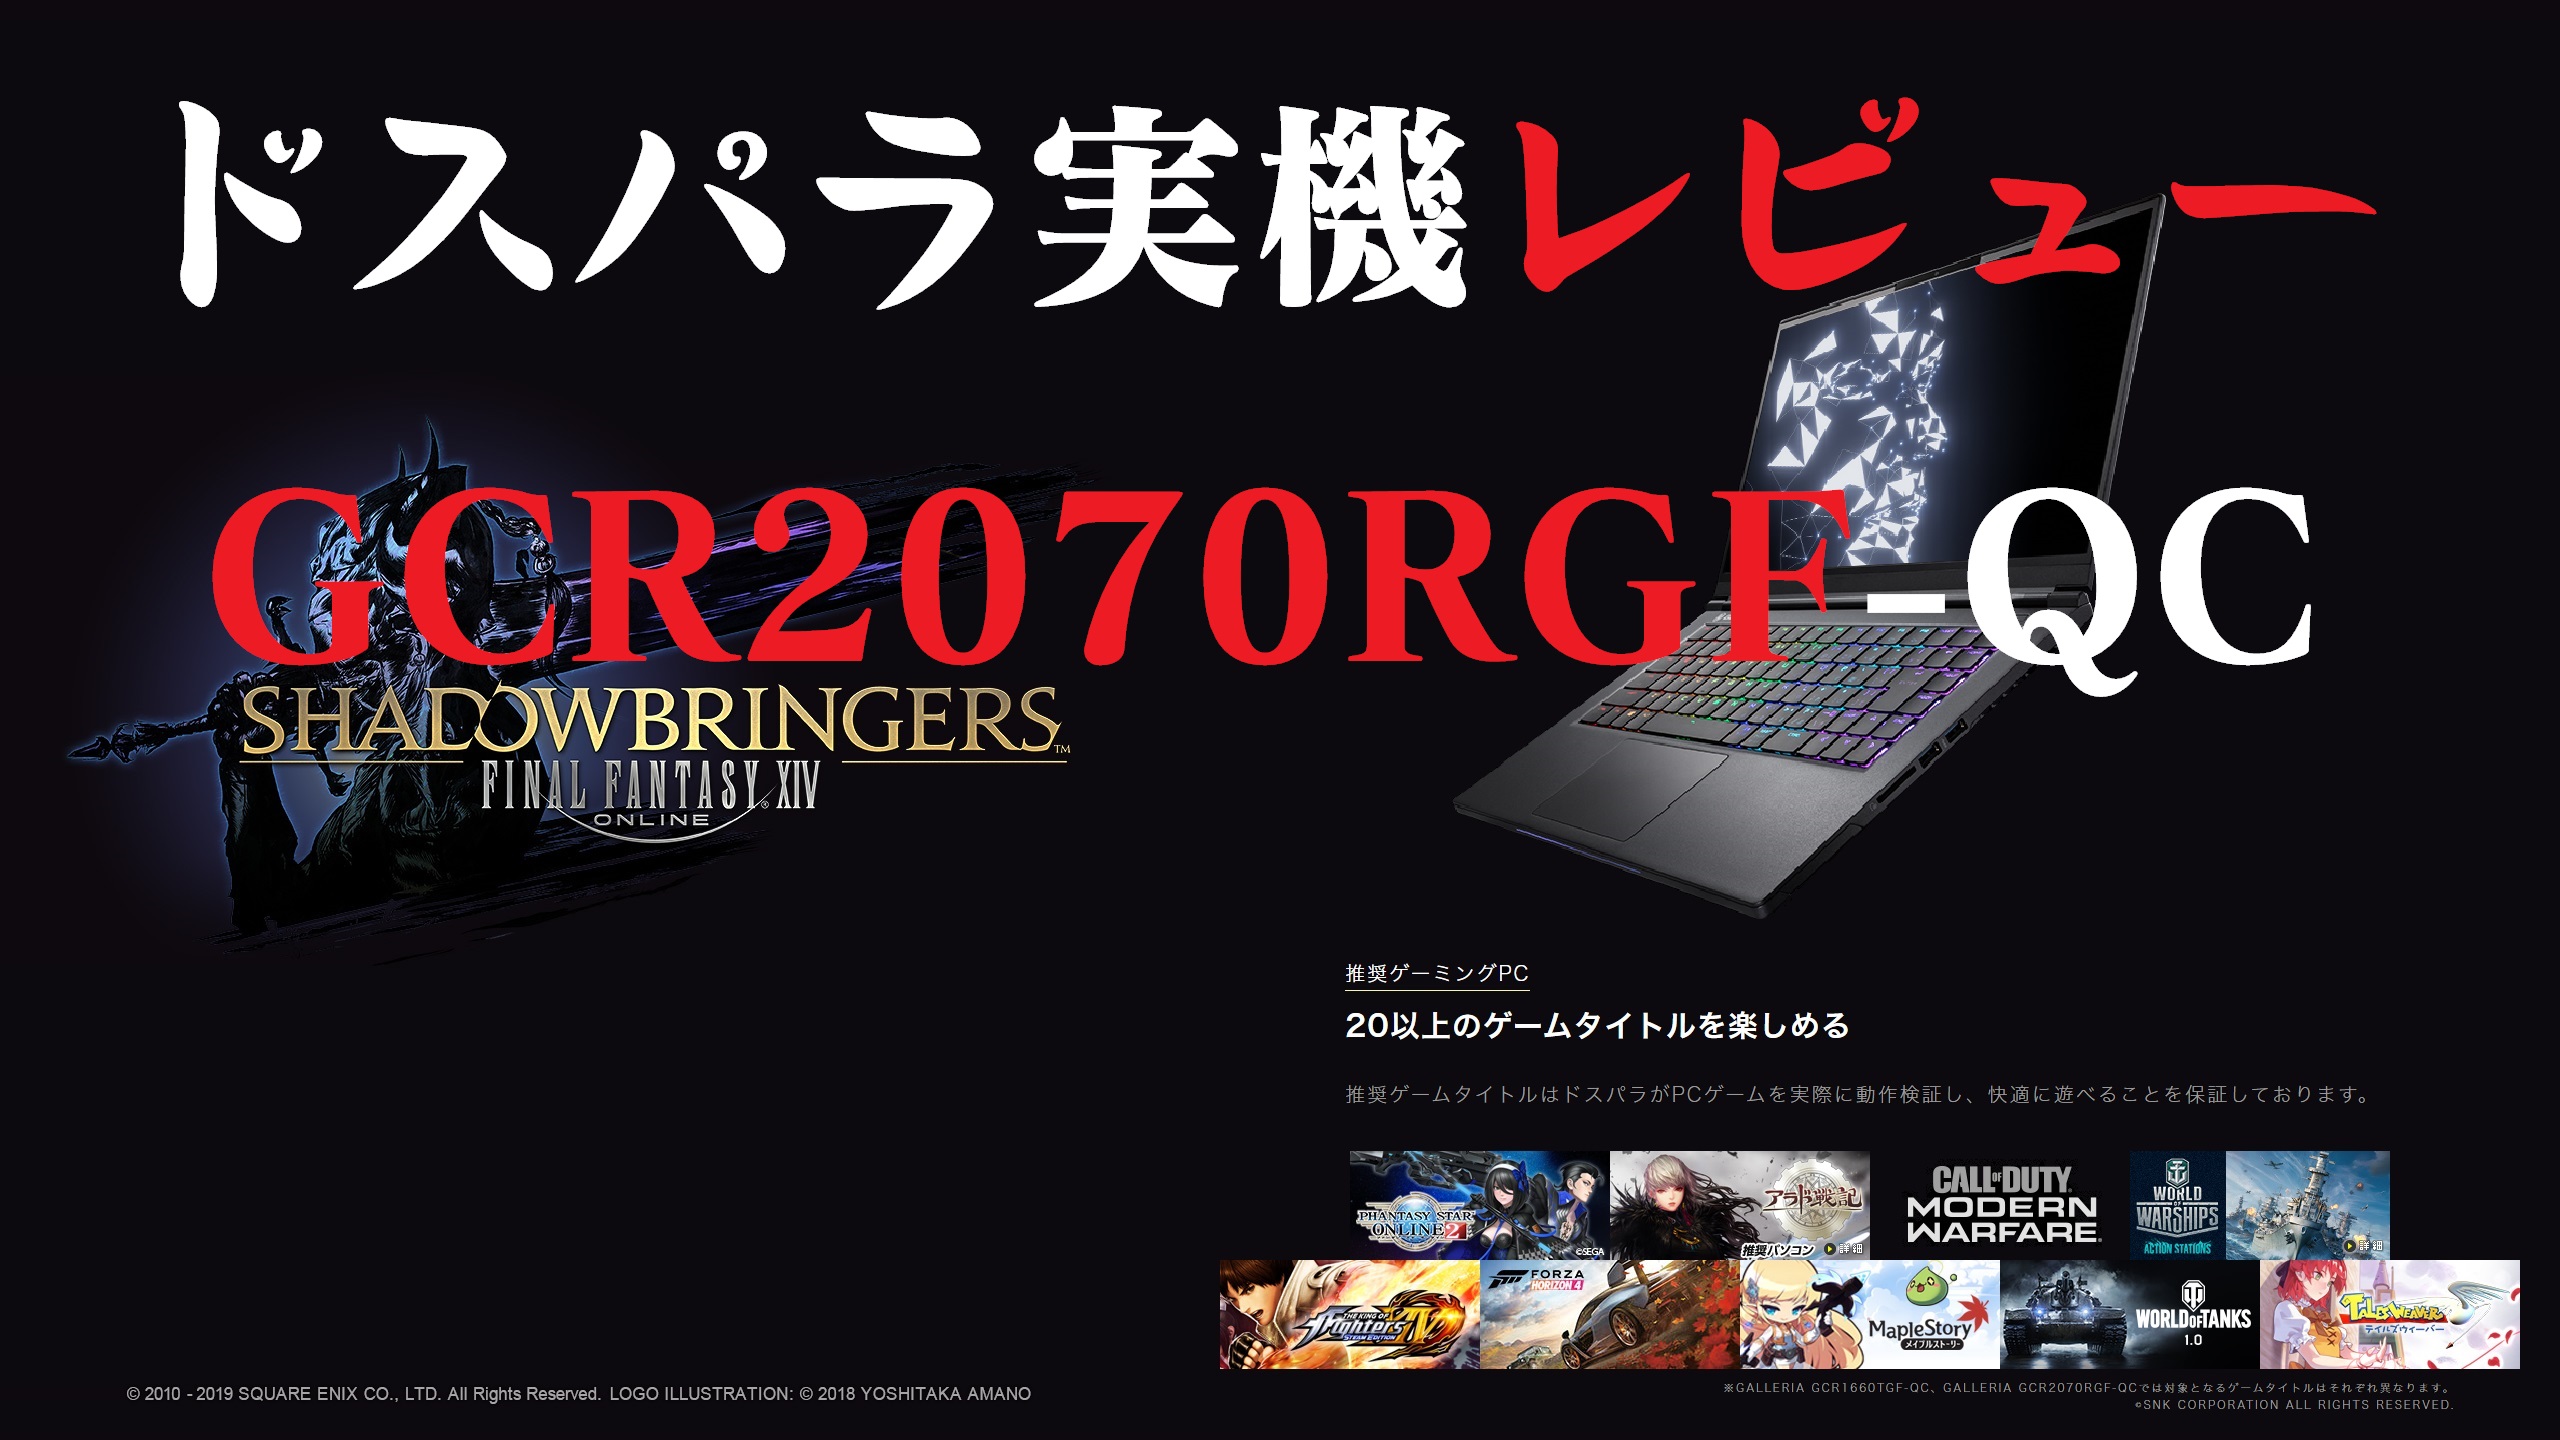 日本最大のブランド しばさん様専用 ガレリア RTX2070 Windows10 ゲーミングPC デスクトップ型PC